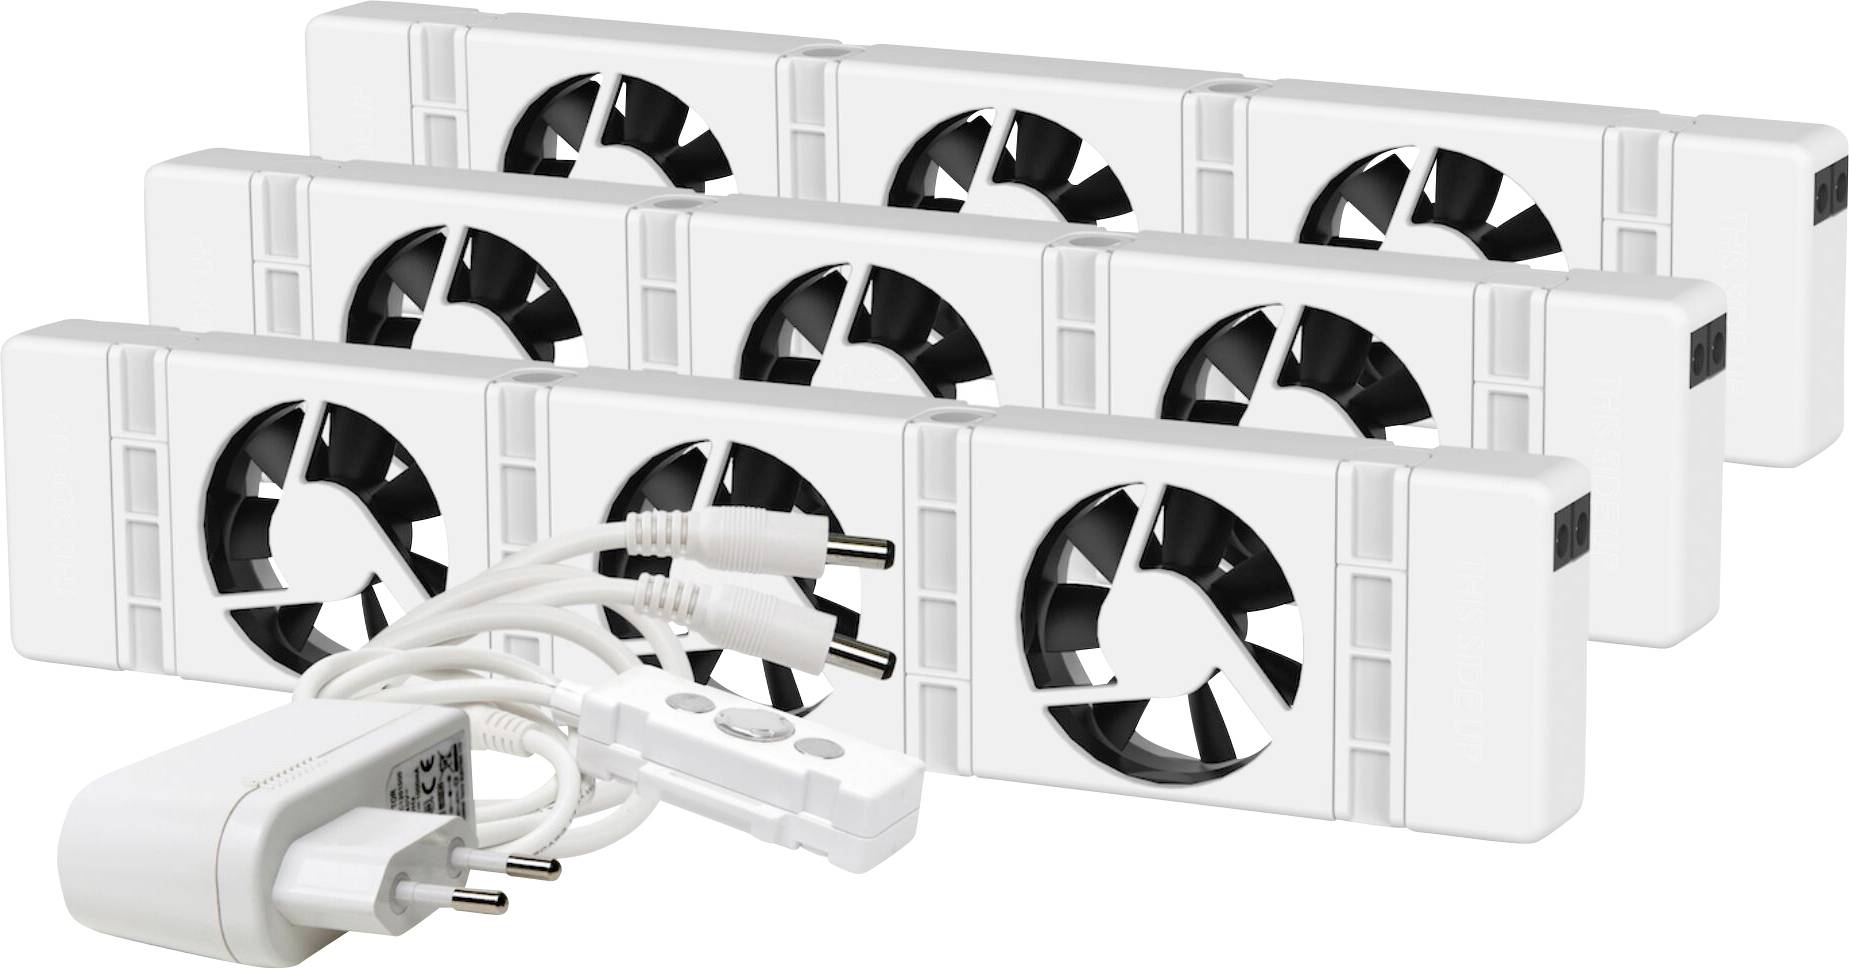 3.0 Trio-Set Radiator Fan Smart Radiator Booster Extension Set Ventilator  Fan